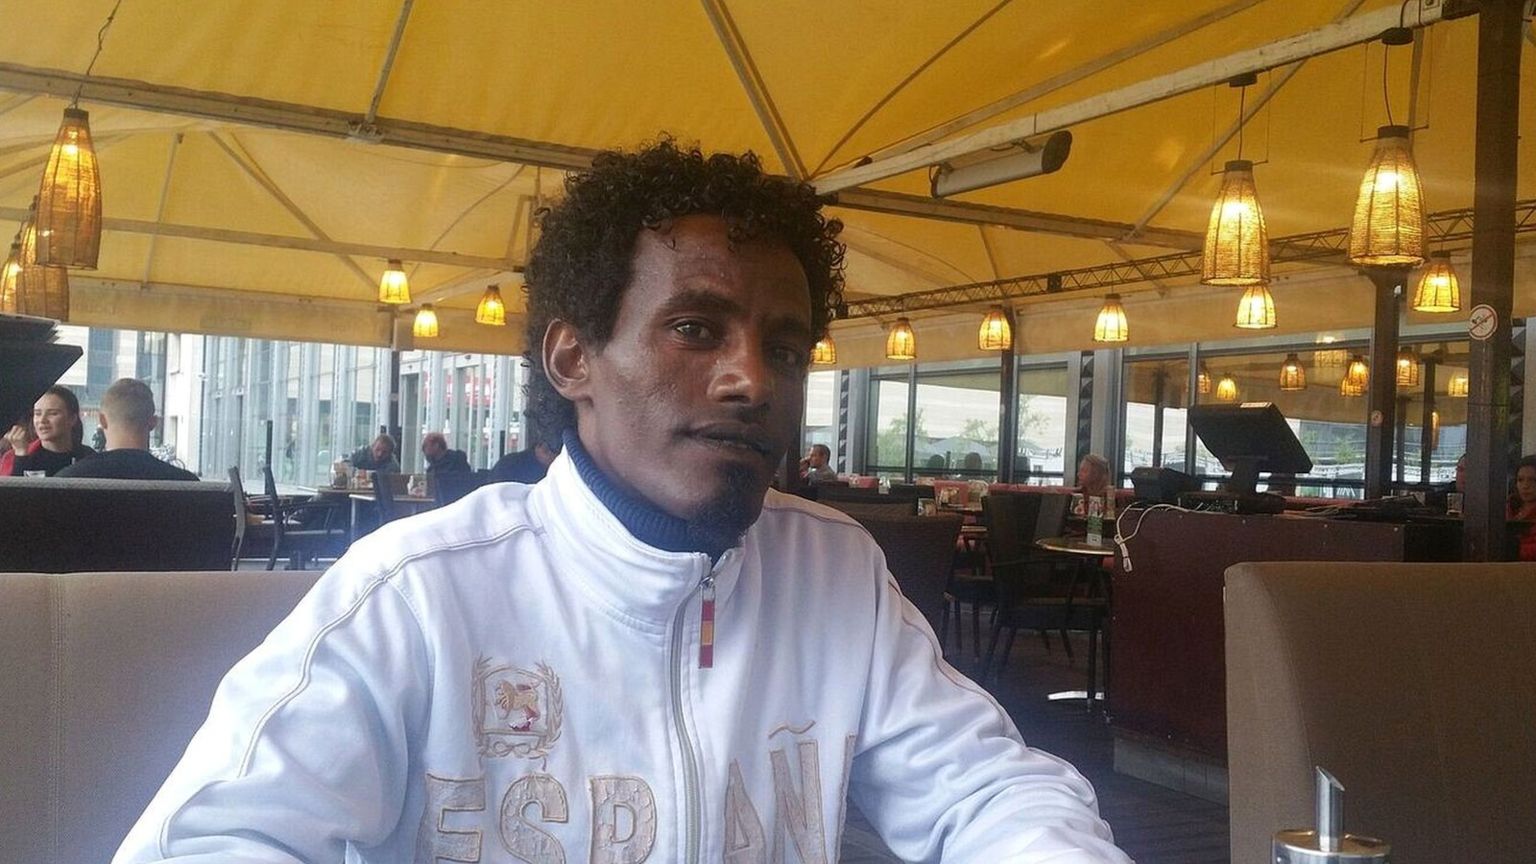 Mekharena - refugee from Eritrea